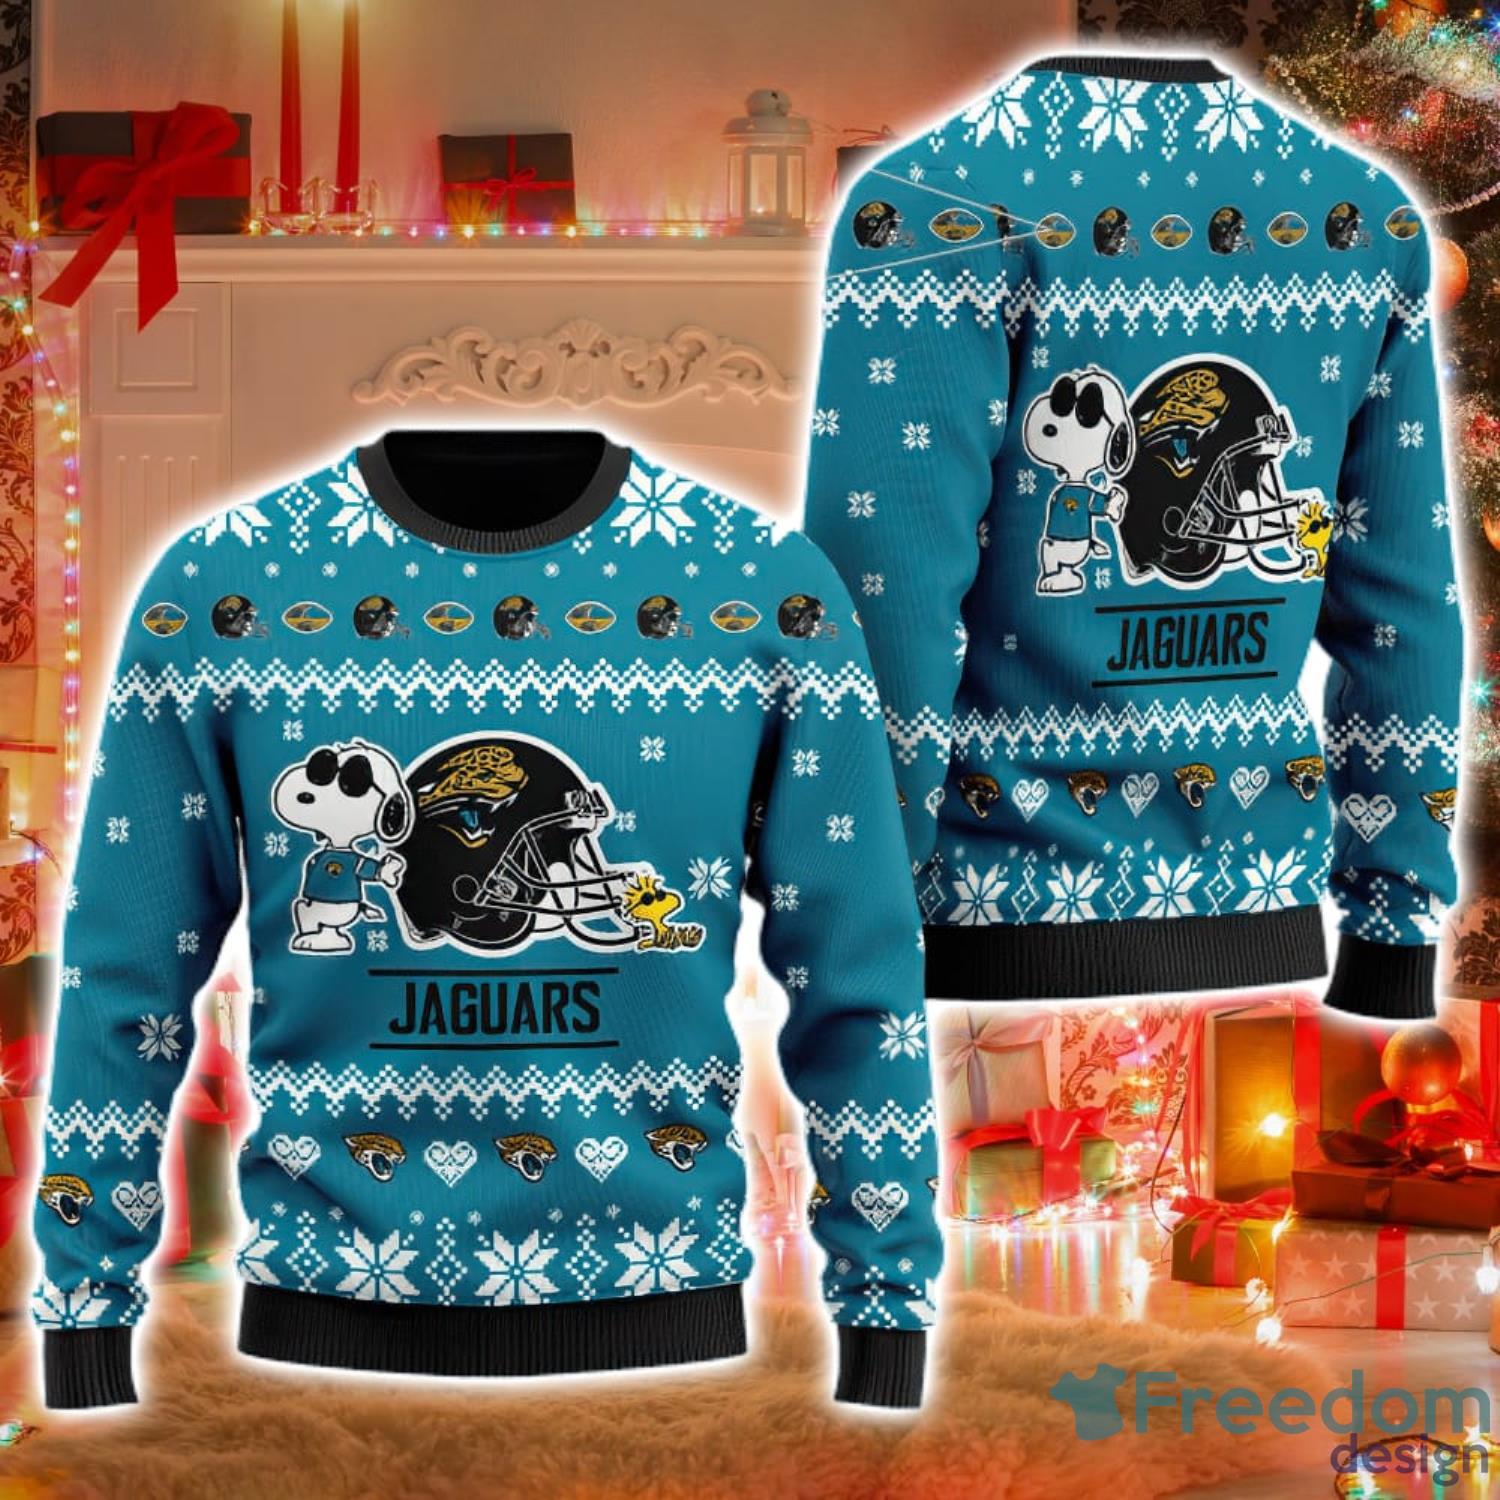 Jacksonville Jaguars Cute Snoopy Football Helmet Ugly Christmas Sweater -  Freedomdesign